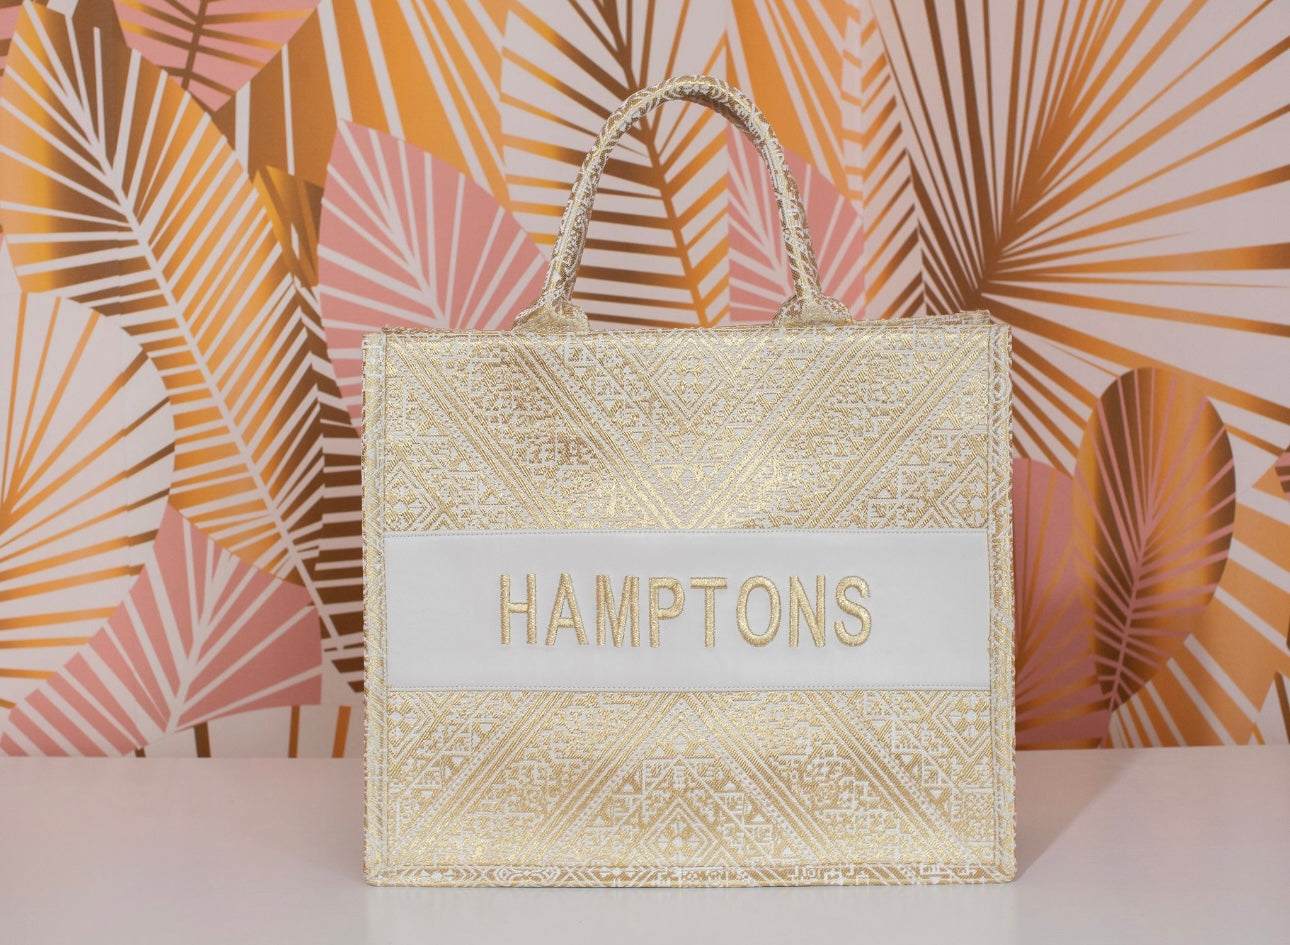 Small Tote CD Hamptons - Premium Bag from Marina St. Barth - Just $175! Shop now at Marina St Barth